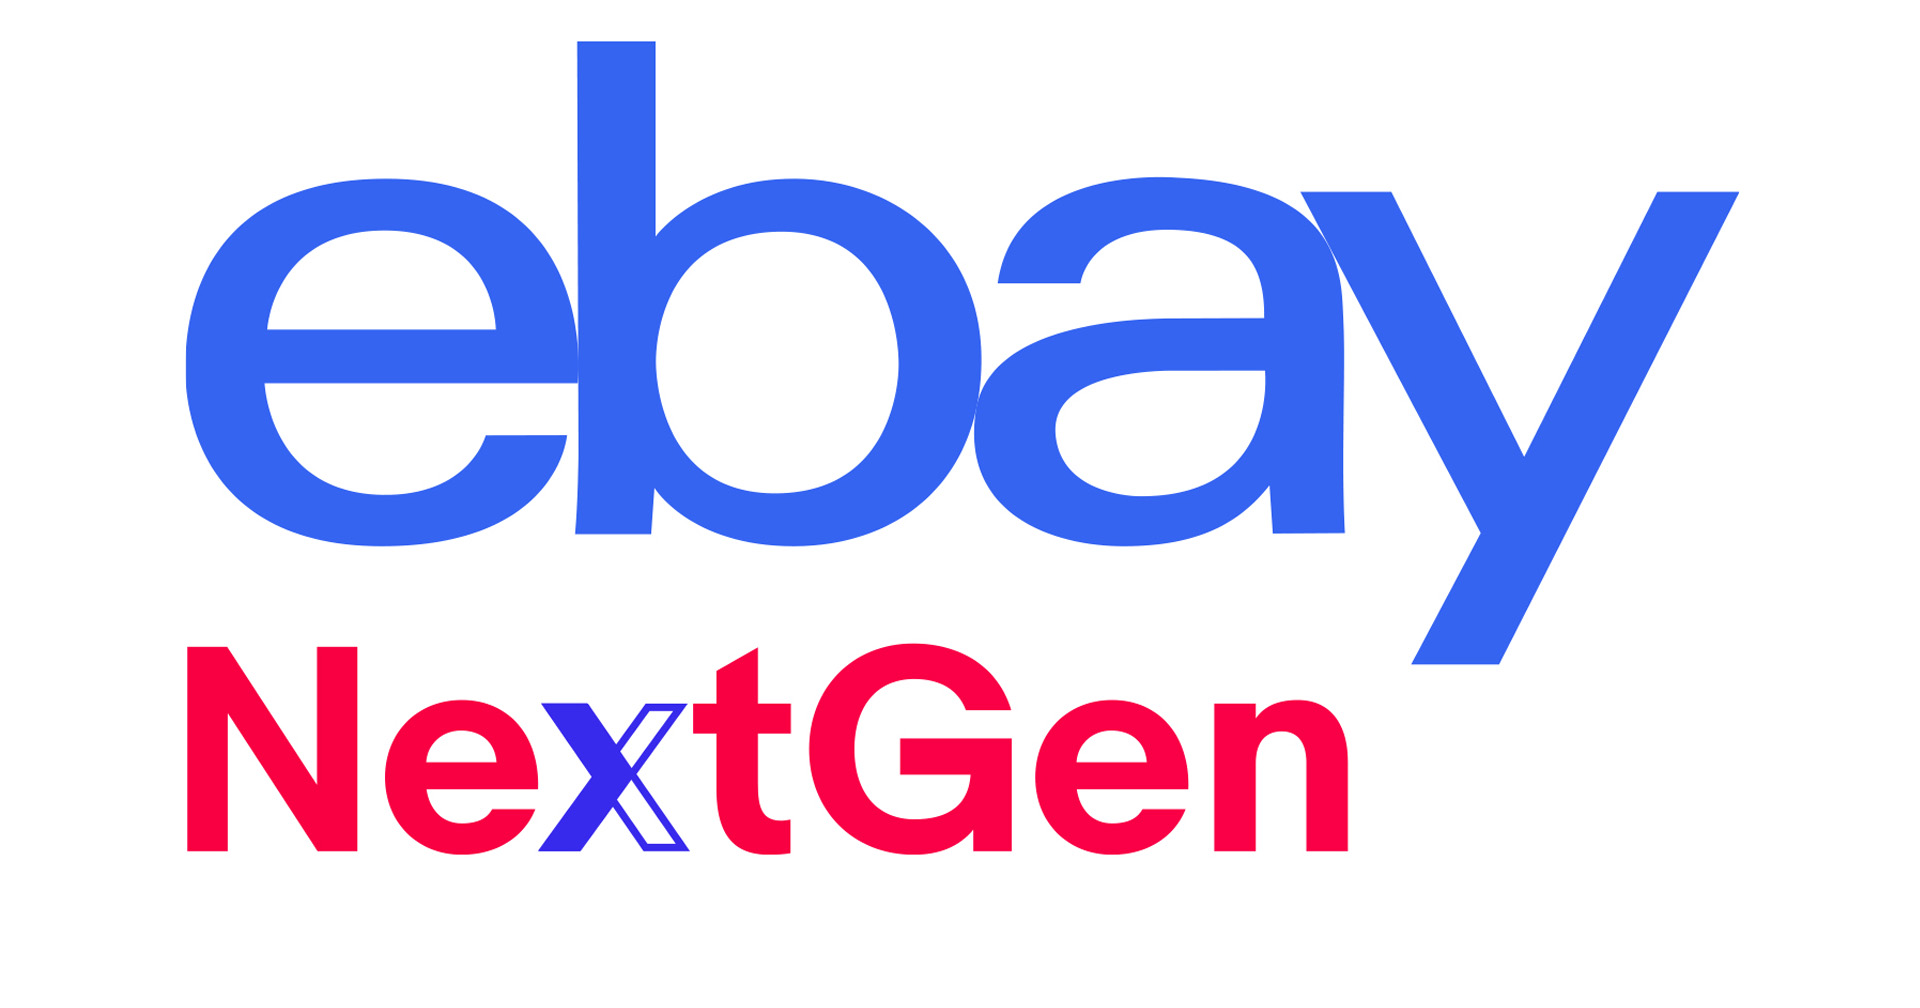 อีเบย์เผยชอปออนไลน์เติบโตต่อเนื่องทั่วโลก ตอบรับไลฟ์สไตล์ WFH พร้อมเปิดโครงการ “eBay NextGen”